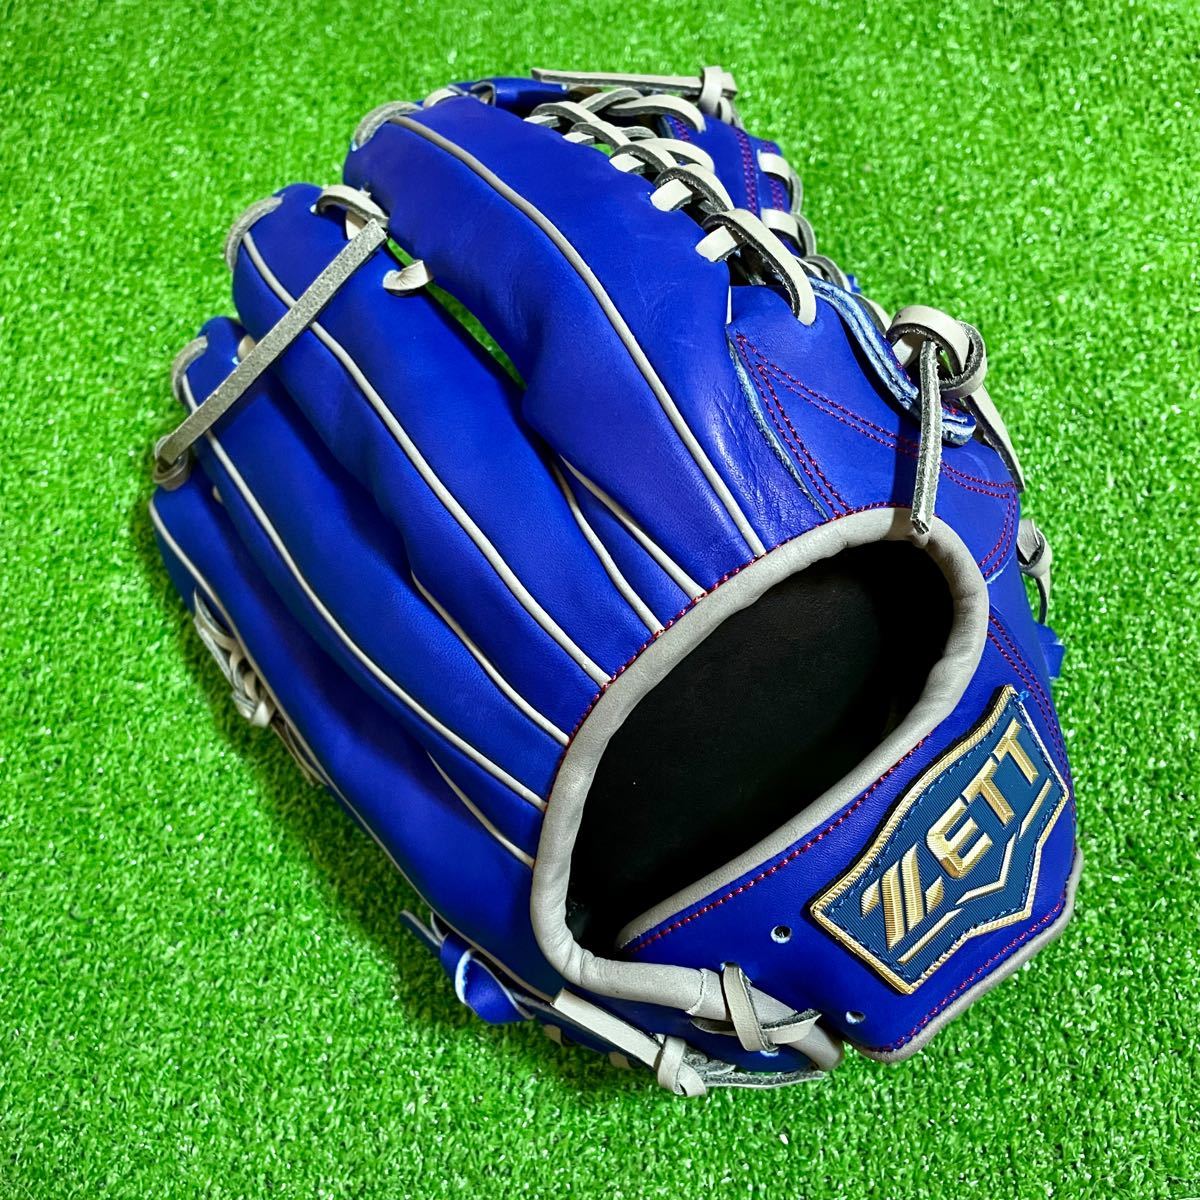 新品 タグ付き 台湾ZETT 硬式用 外野手用 グローブ ブルー シルバー 13インチ 硬式野球 台湾製 ロイヤルブルー グラブ